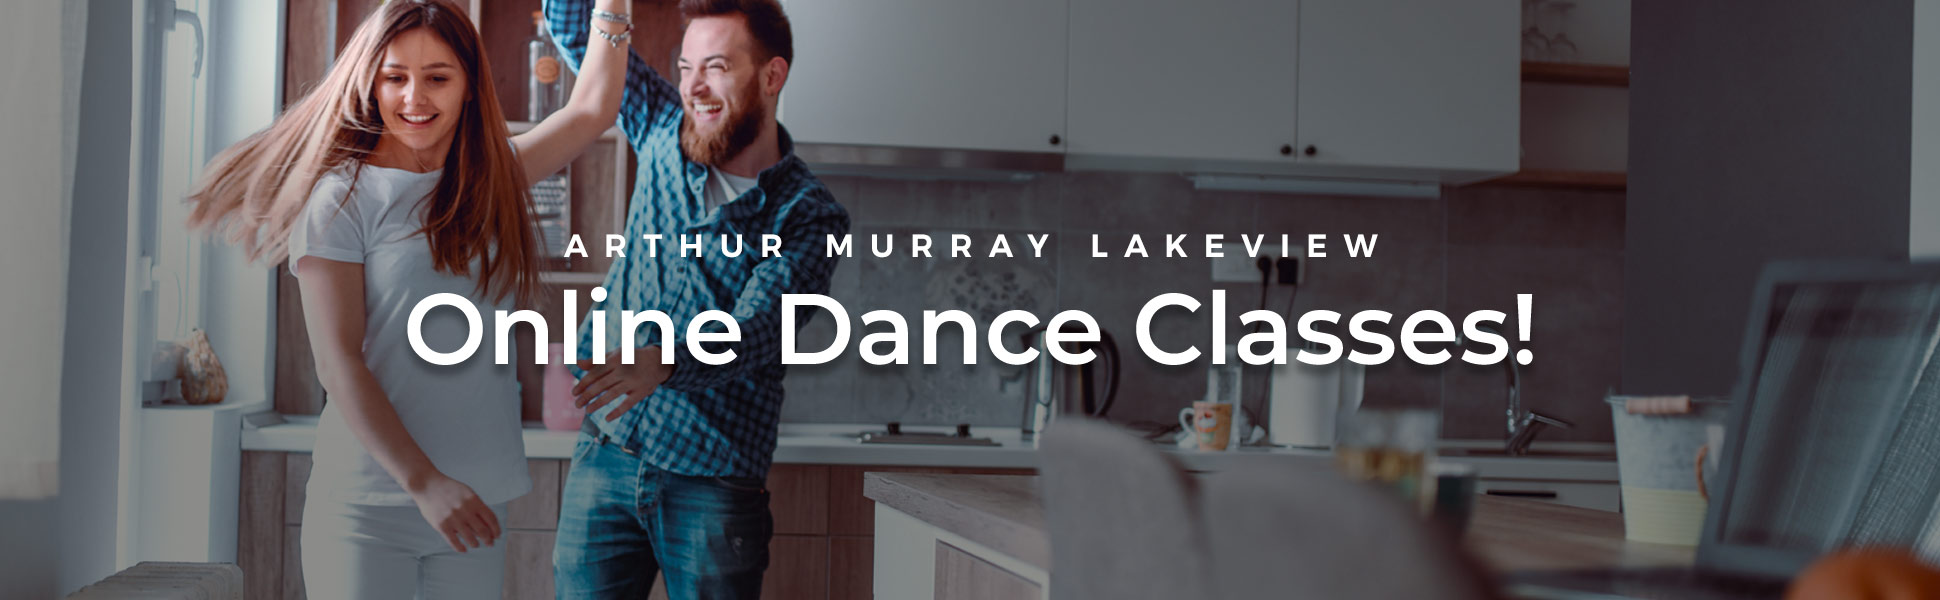 Arthur Murray Online Dance Classes Lakeview